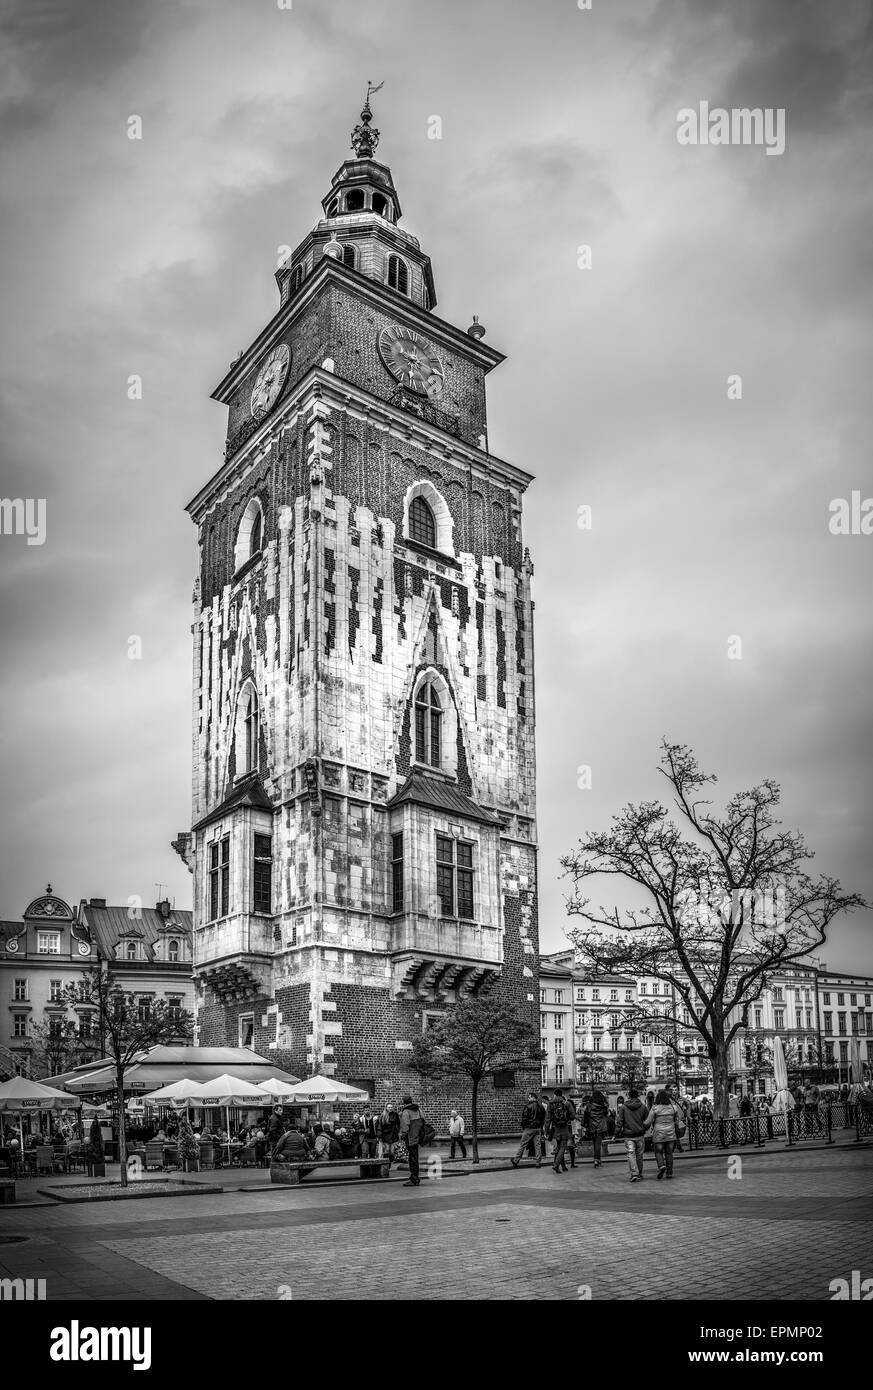 Cracovia, Polonia - Mayo 01, 2015: fotografía en blanco y negro del antiguo ayuntamiento en la plaza principal de Cracovia Cracovia, Polonia ( ) Foto de stock